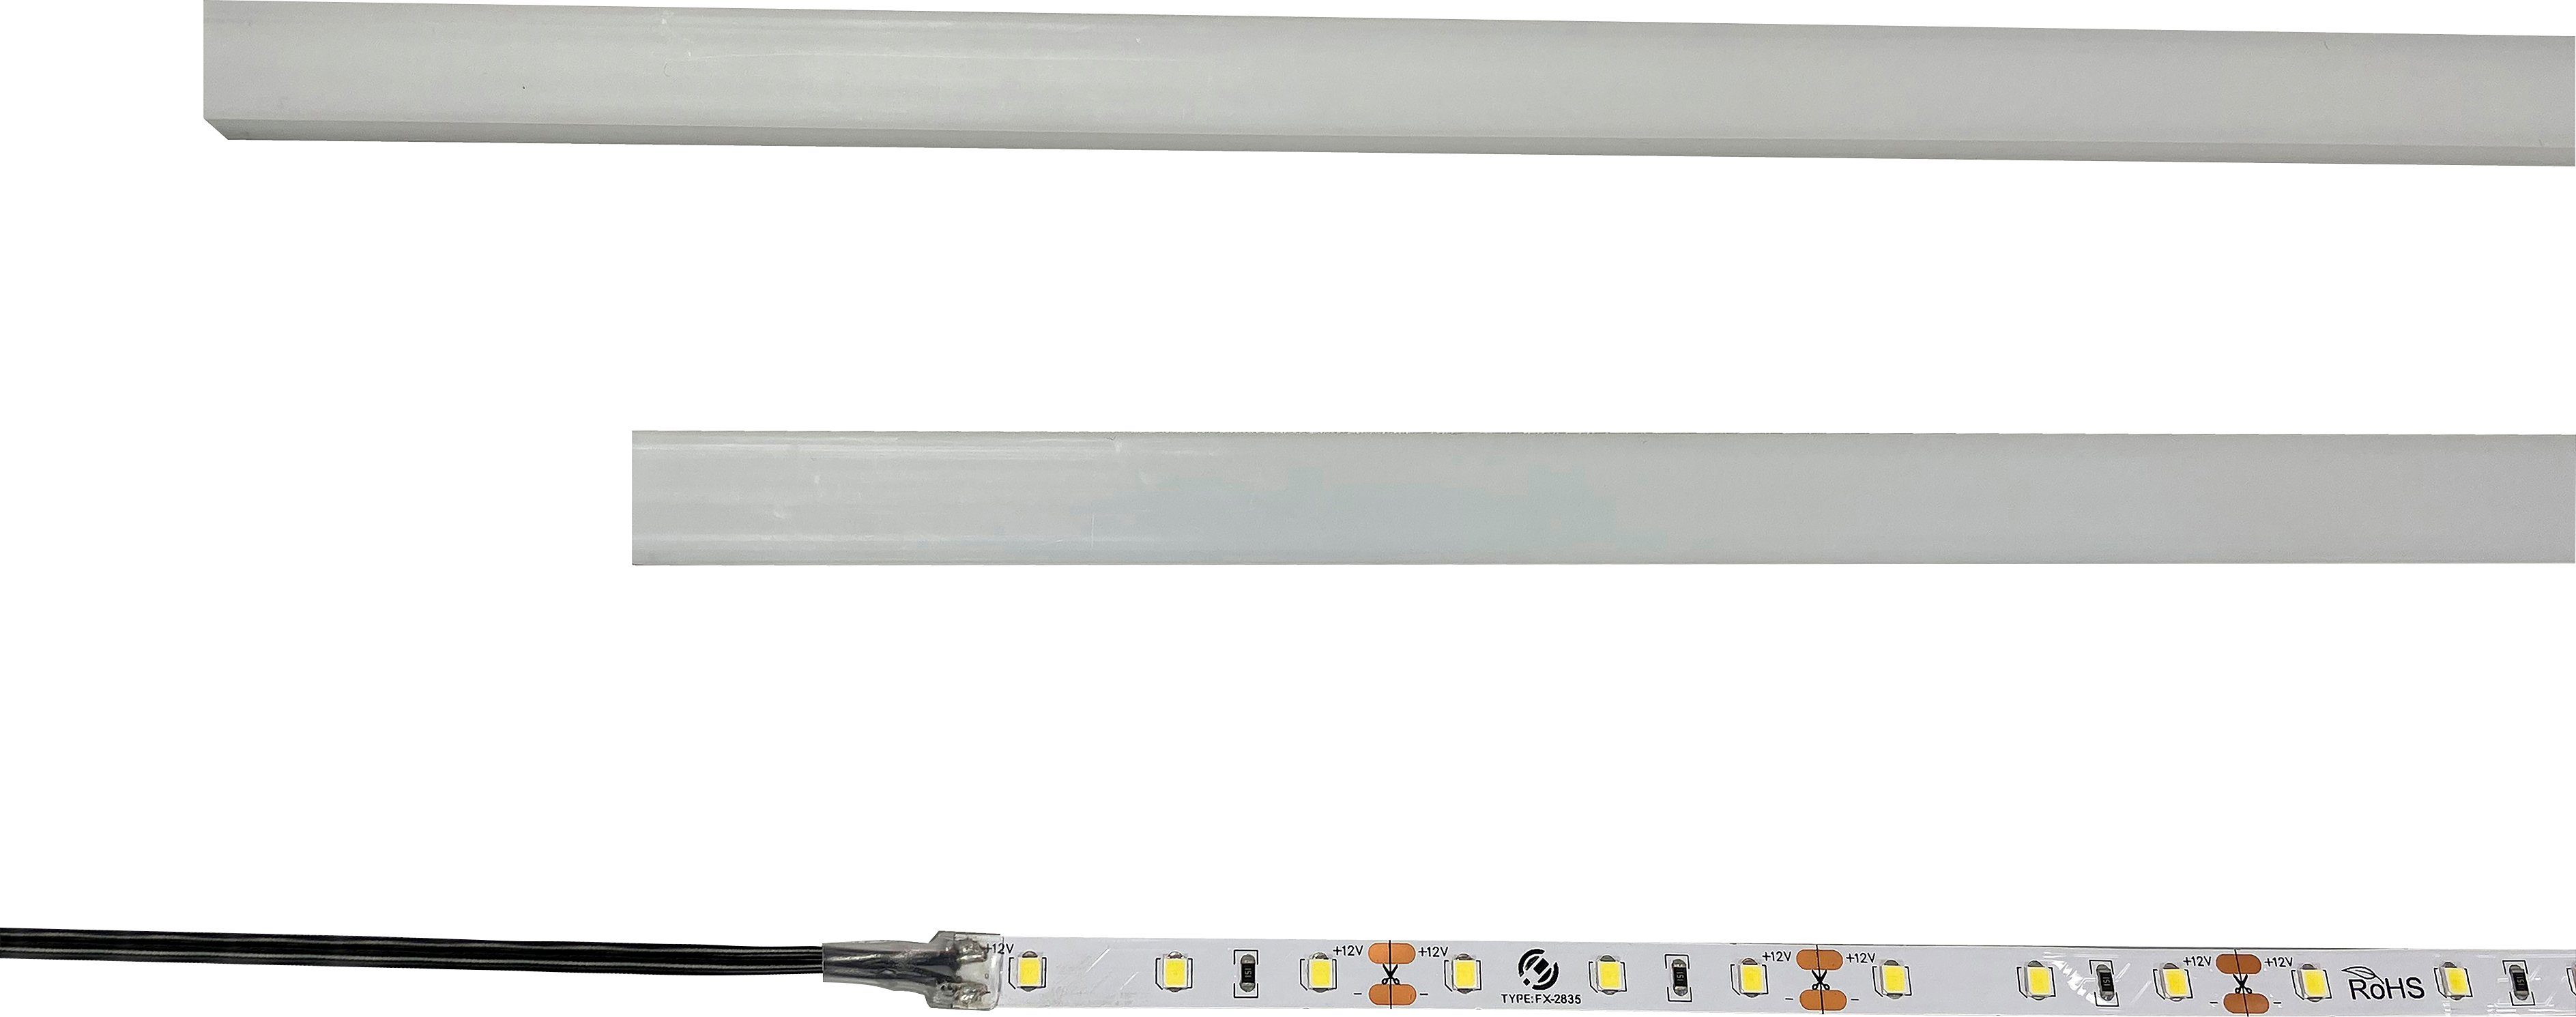 LED INOSIGN Kaltweiß, LED-Einbauprofile universal, Modell Skoskap integriert, Ein-/Ausschalter, LED für optinonal fest Unterbauleuchte